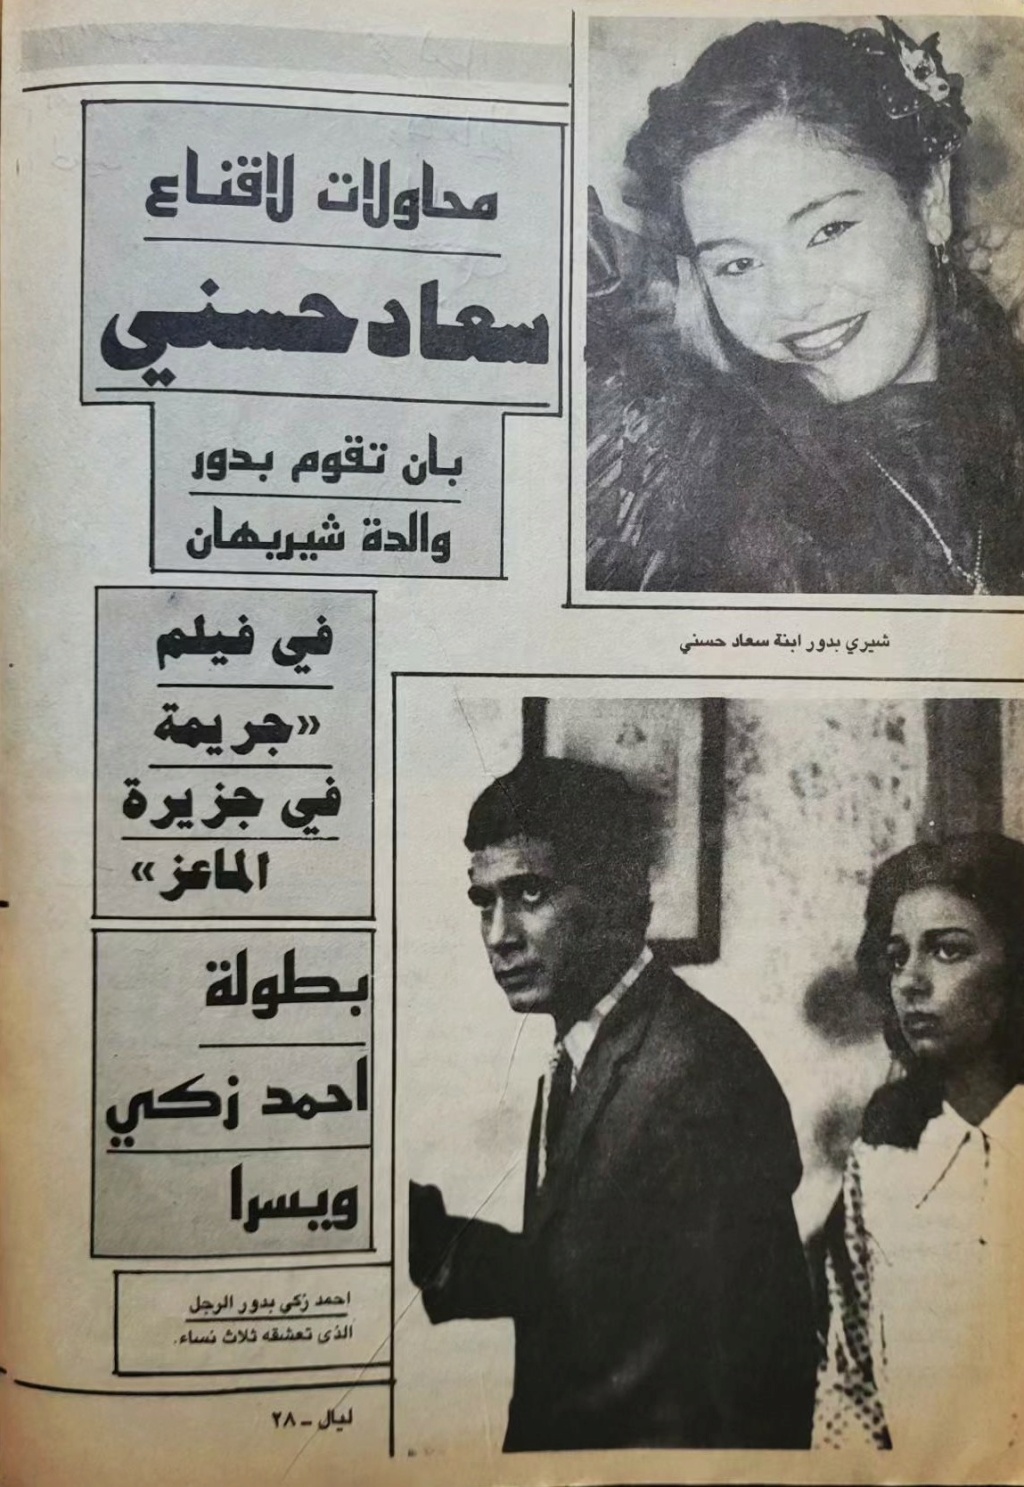 صحفي - مقال صحفي : محاولات لاقناع سعاد حسني بان تقوم بدور والدة شيريهان 1987 م 1469